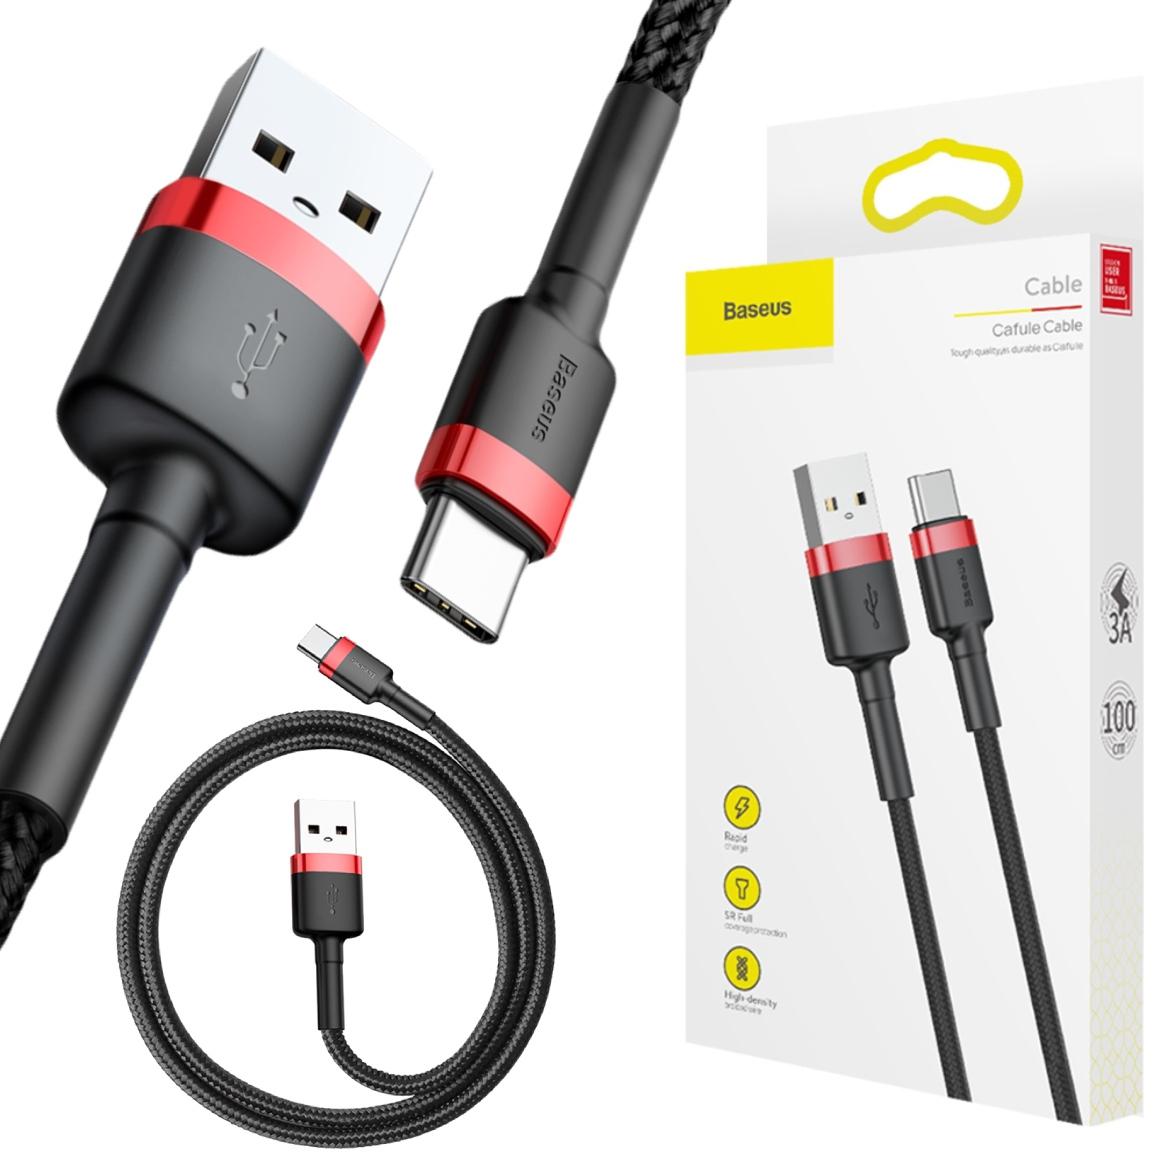 Baseus Cafule Cable wytrzymały nylonowy kabel przewód USB / USB-C QC3.0 3A 1m czarno-czerwony (CATKLF-B91) - najważniejsze cechy: